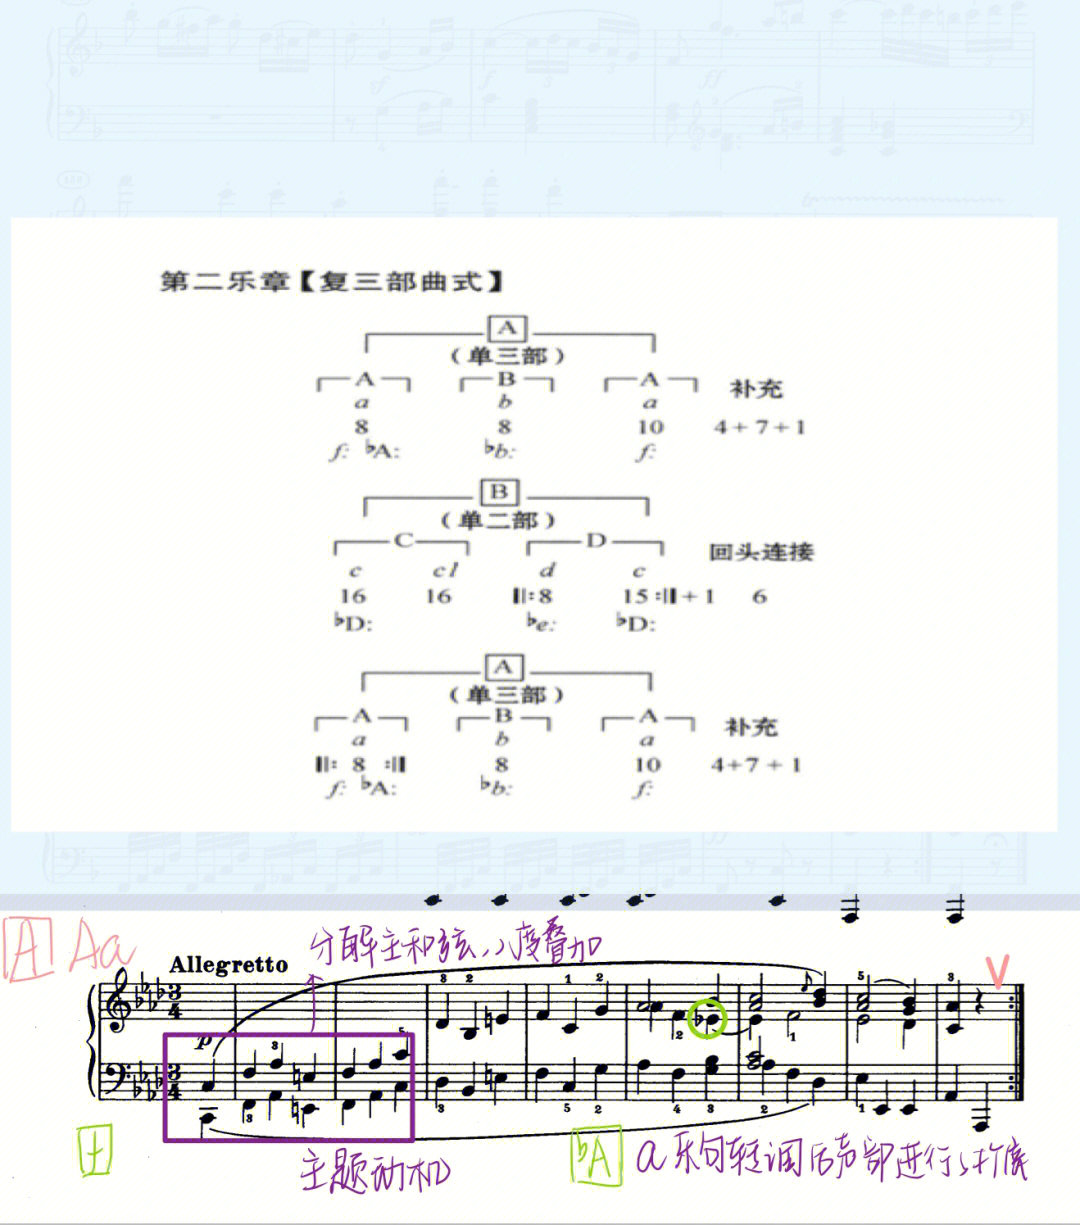 贝多芬钢琴奏鸣曲op10no2第二乐章曲式分析